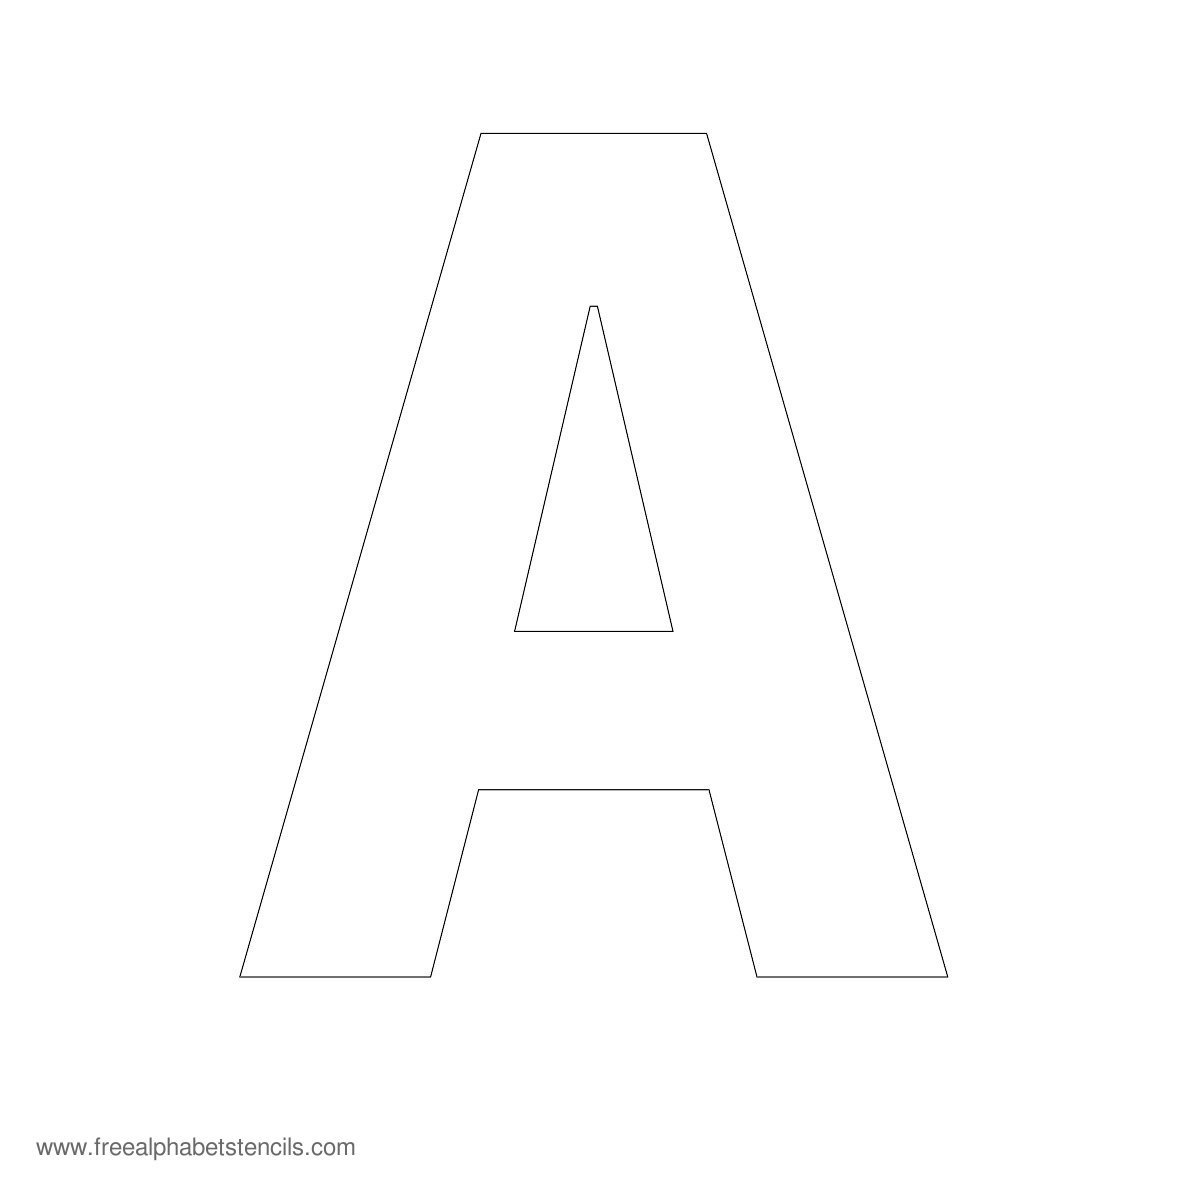 Large Alphabet Stencils | Freealphabetstencils - Free Printable Alphabet Stencils To Cut Out